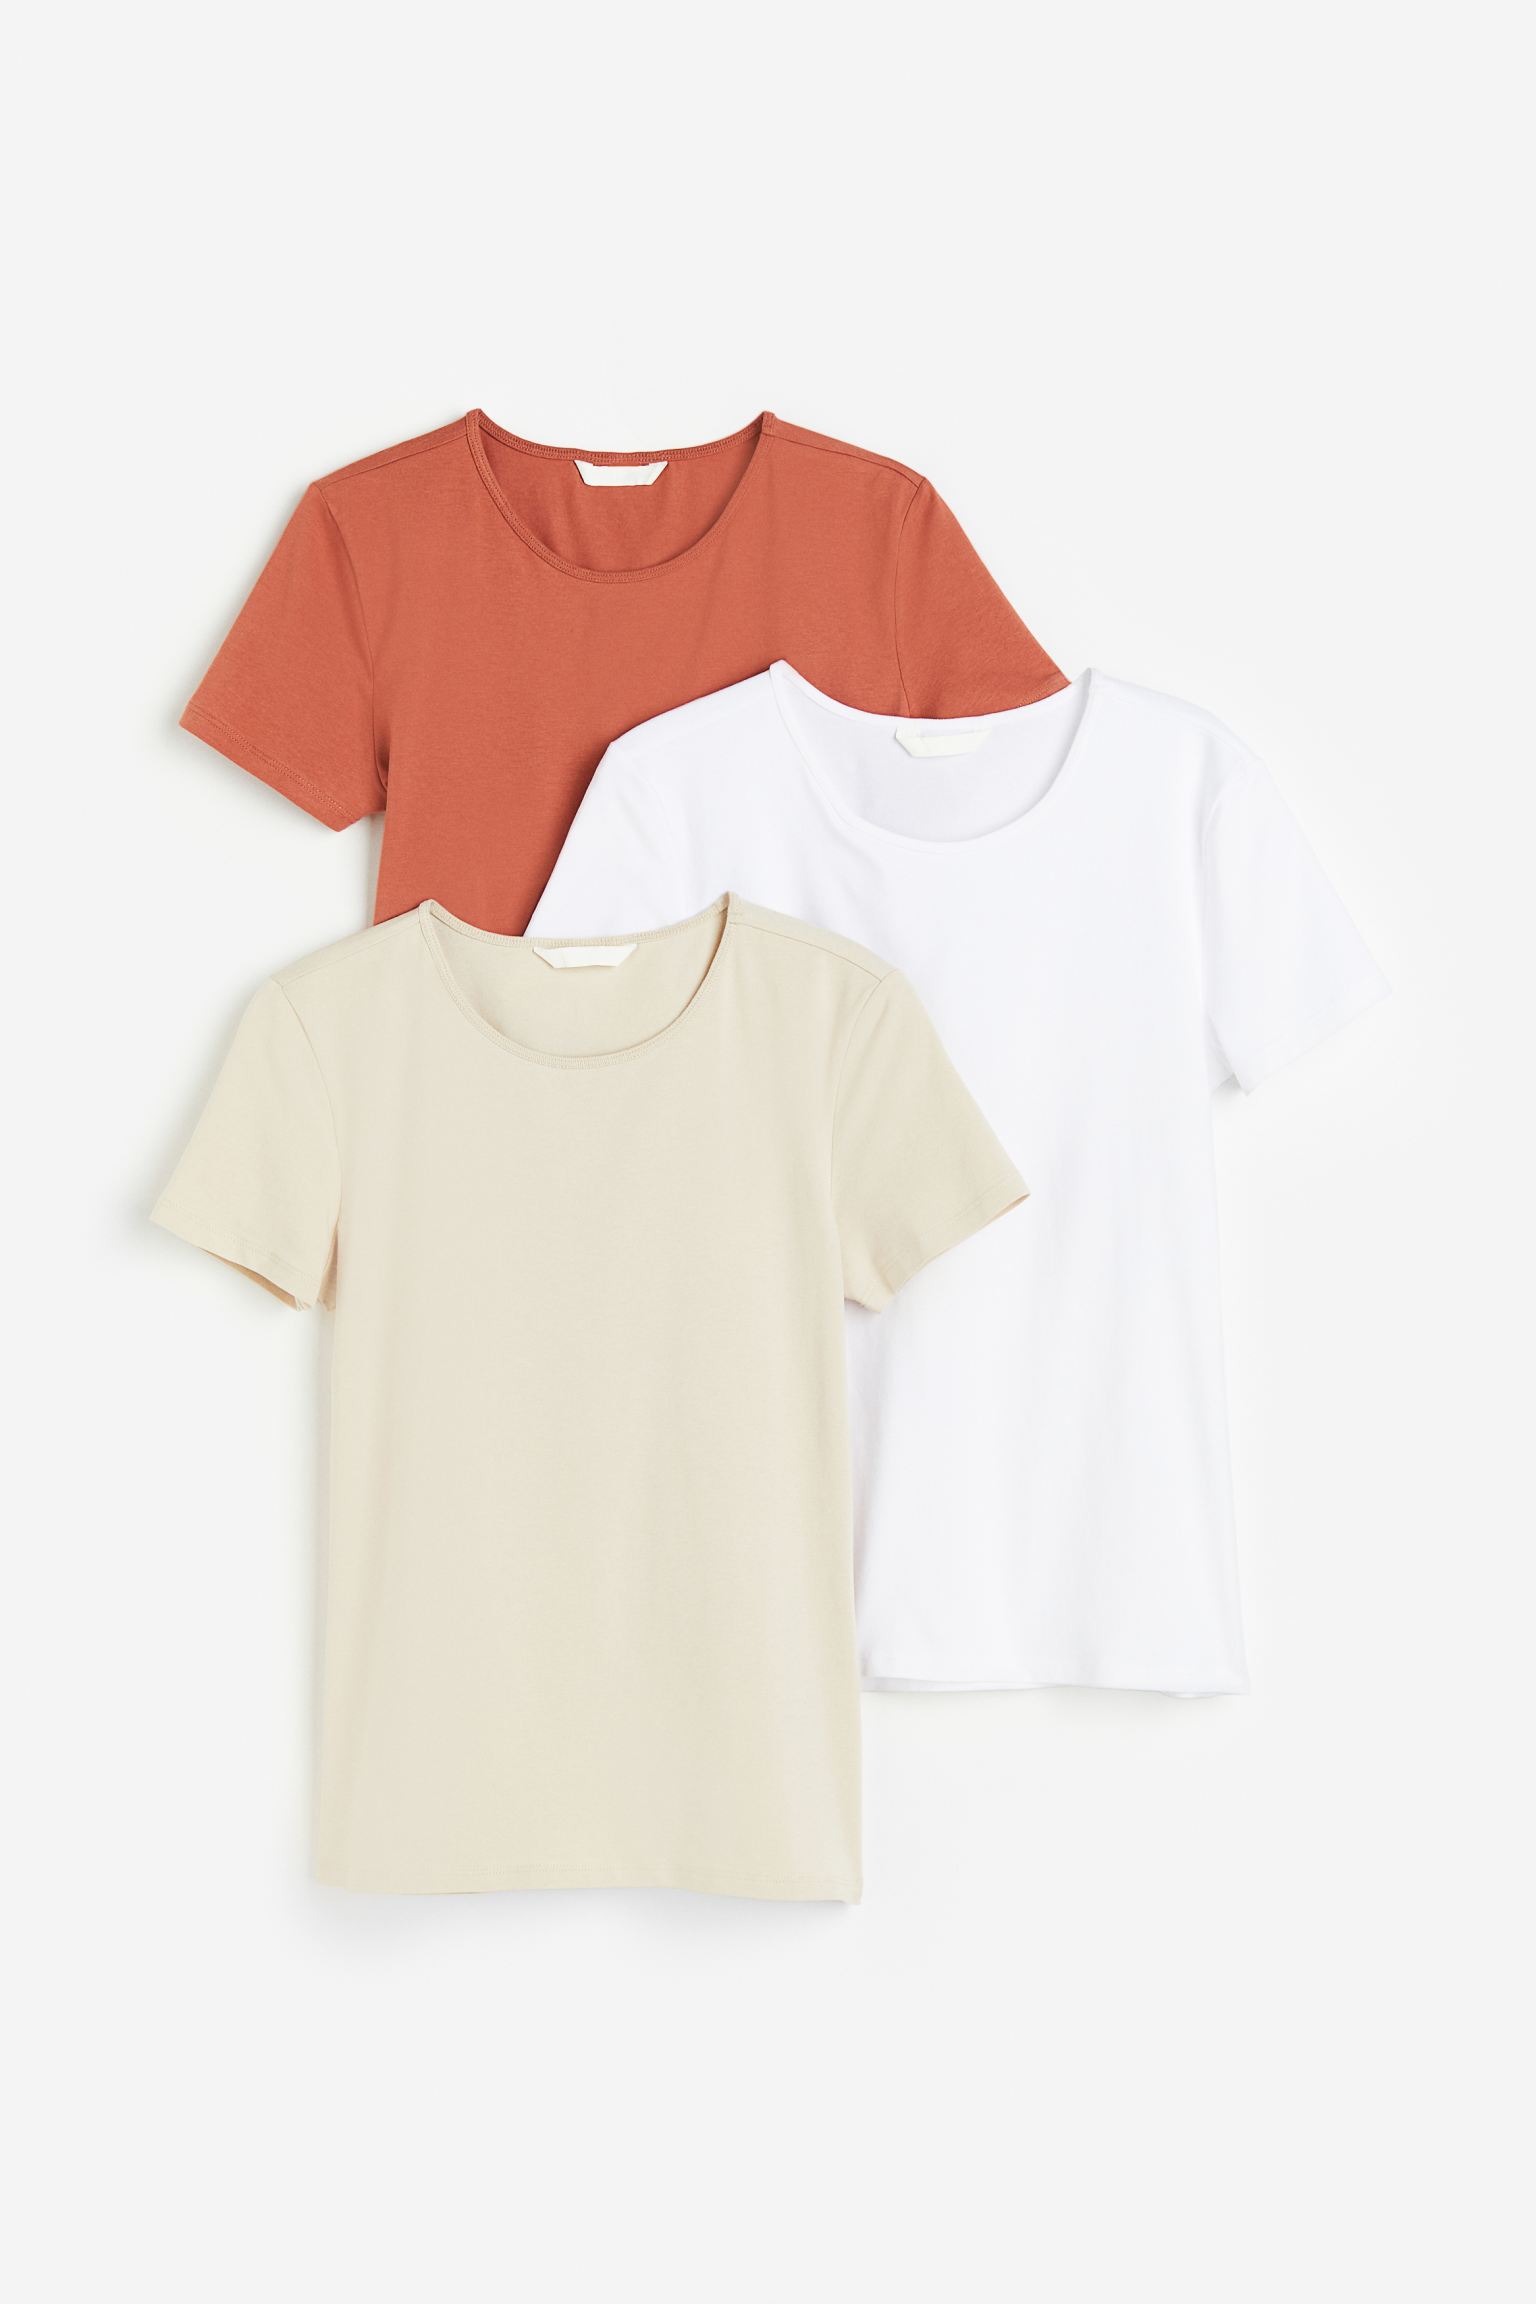 Комплект футболок женских H&M 1166415003 оранжевых M (доставка из-за рубежа)